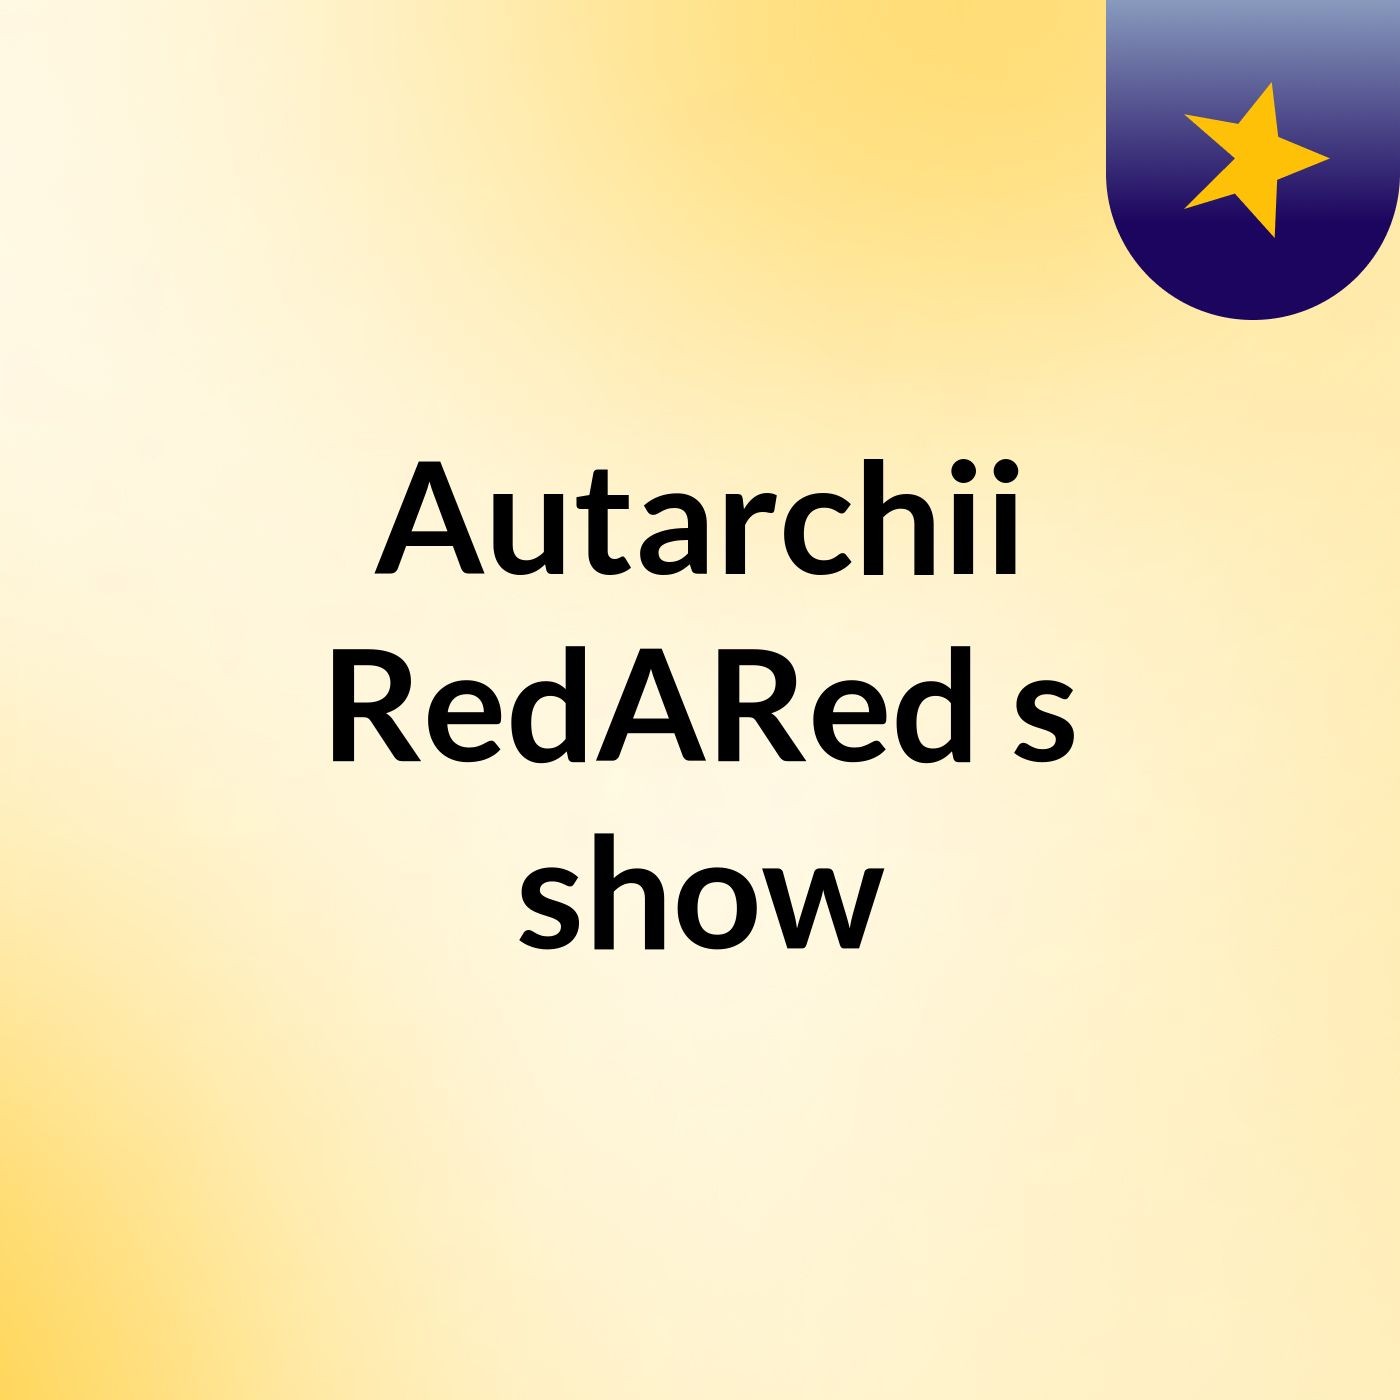 Autarchii RedARed's show